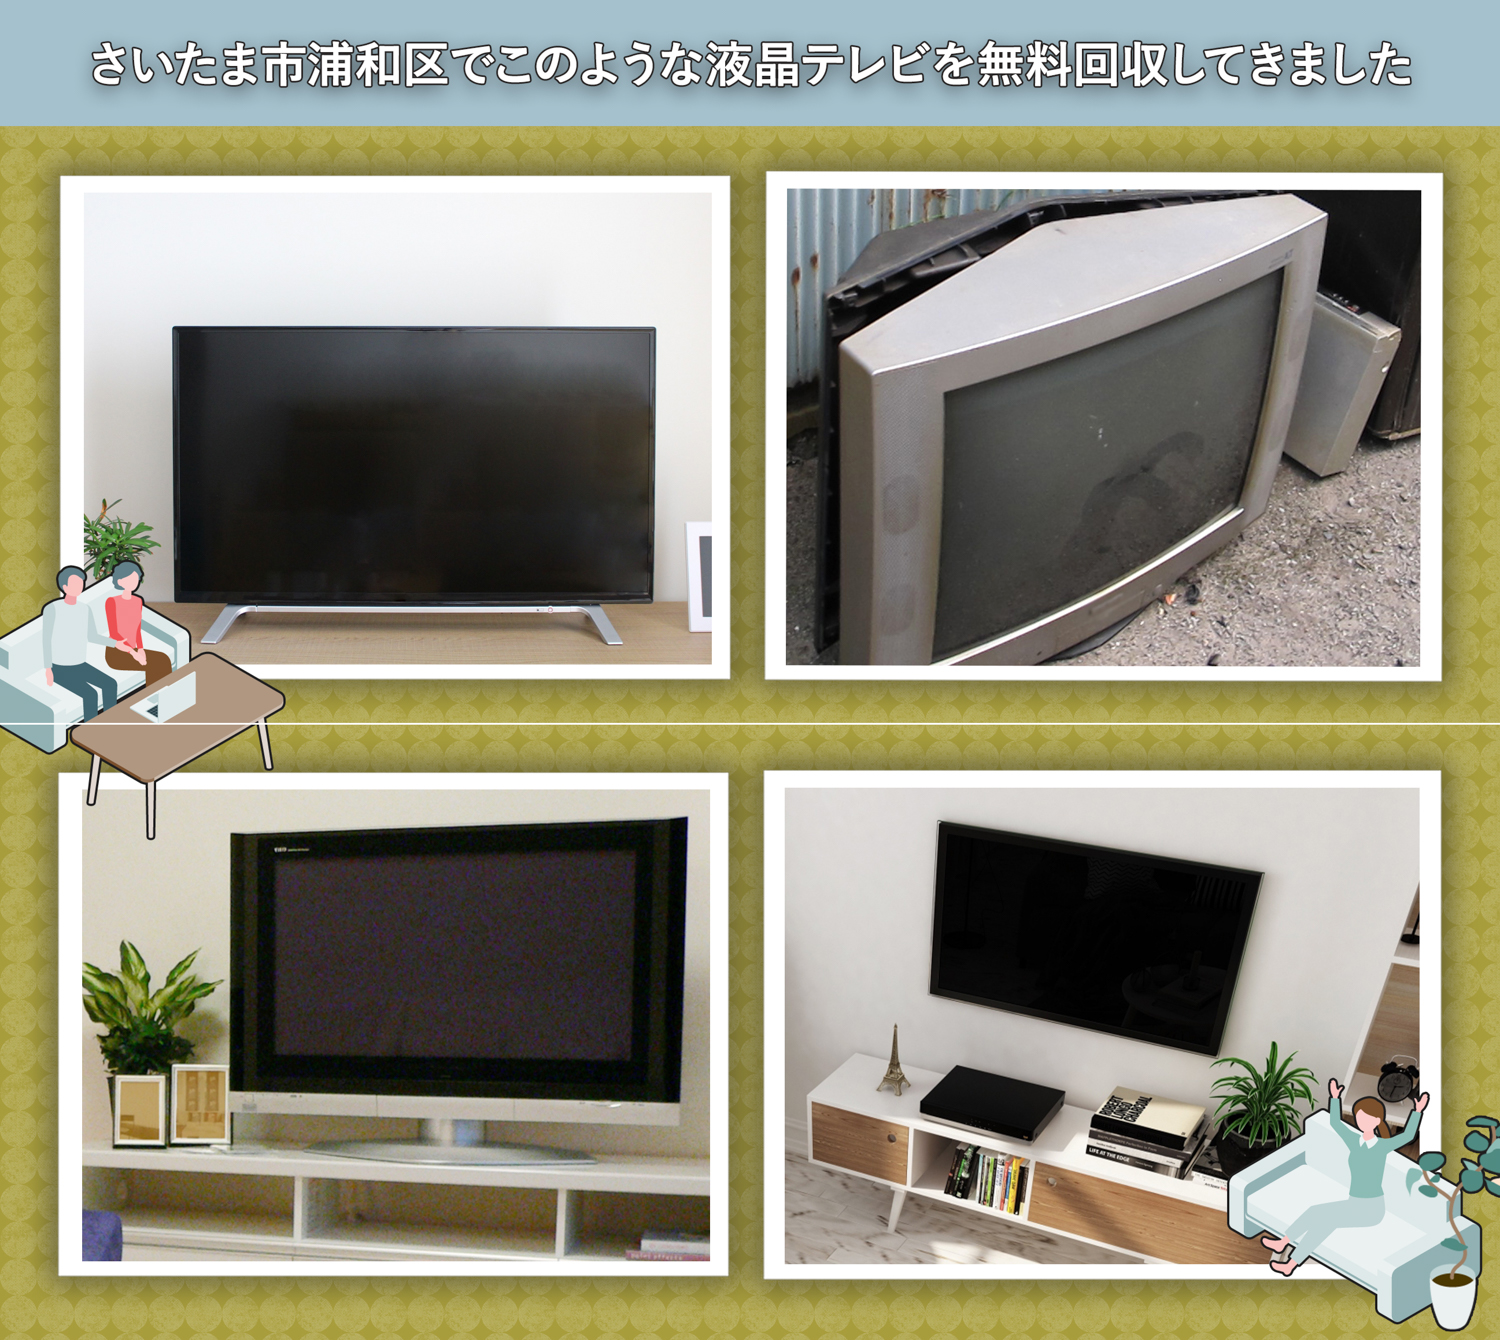 さいたま市浦和区でこのような液晶テレビを無料回収してきました。